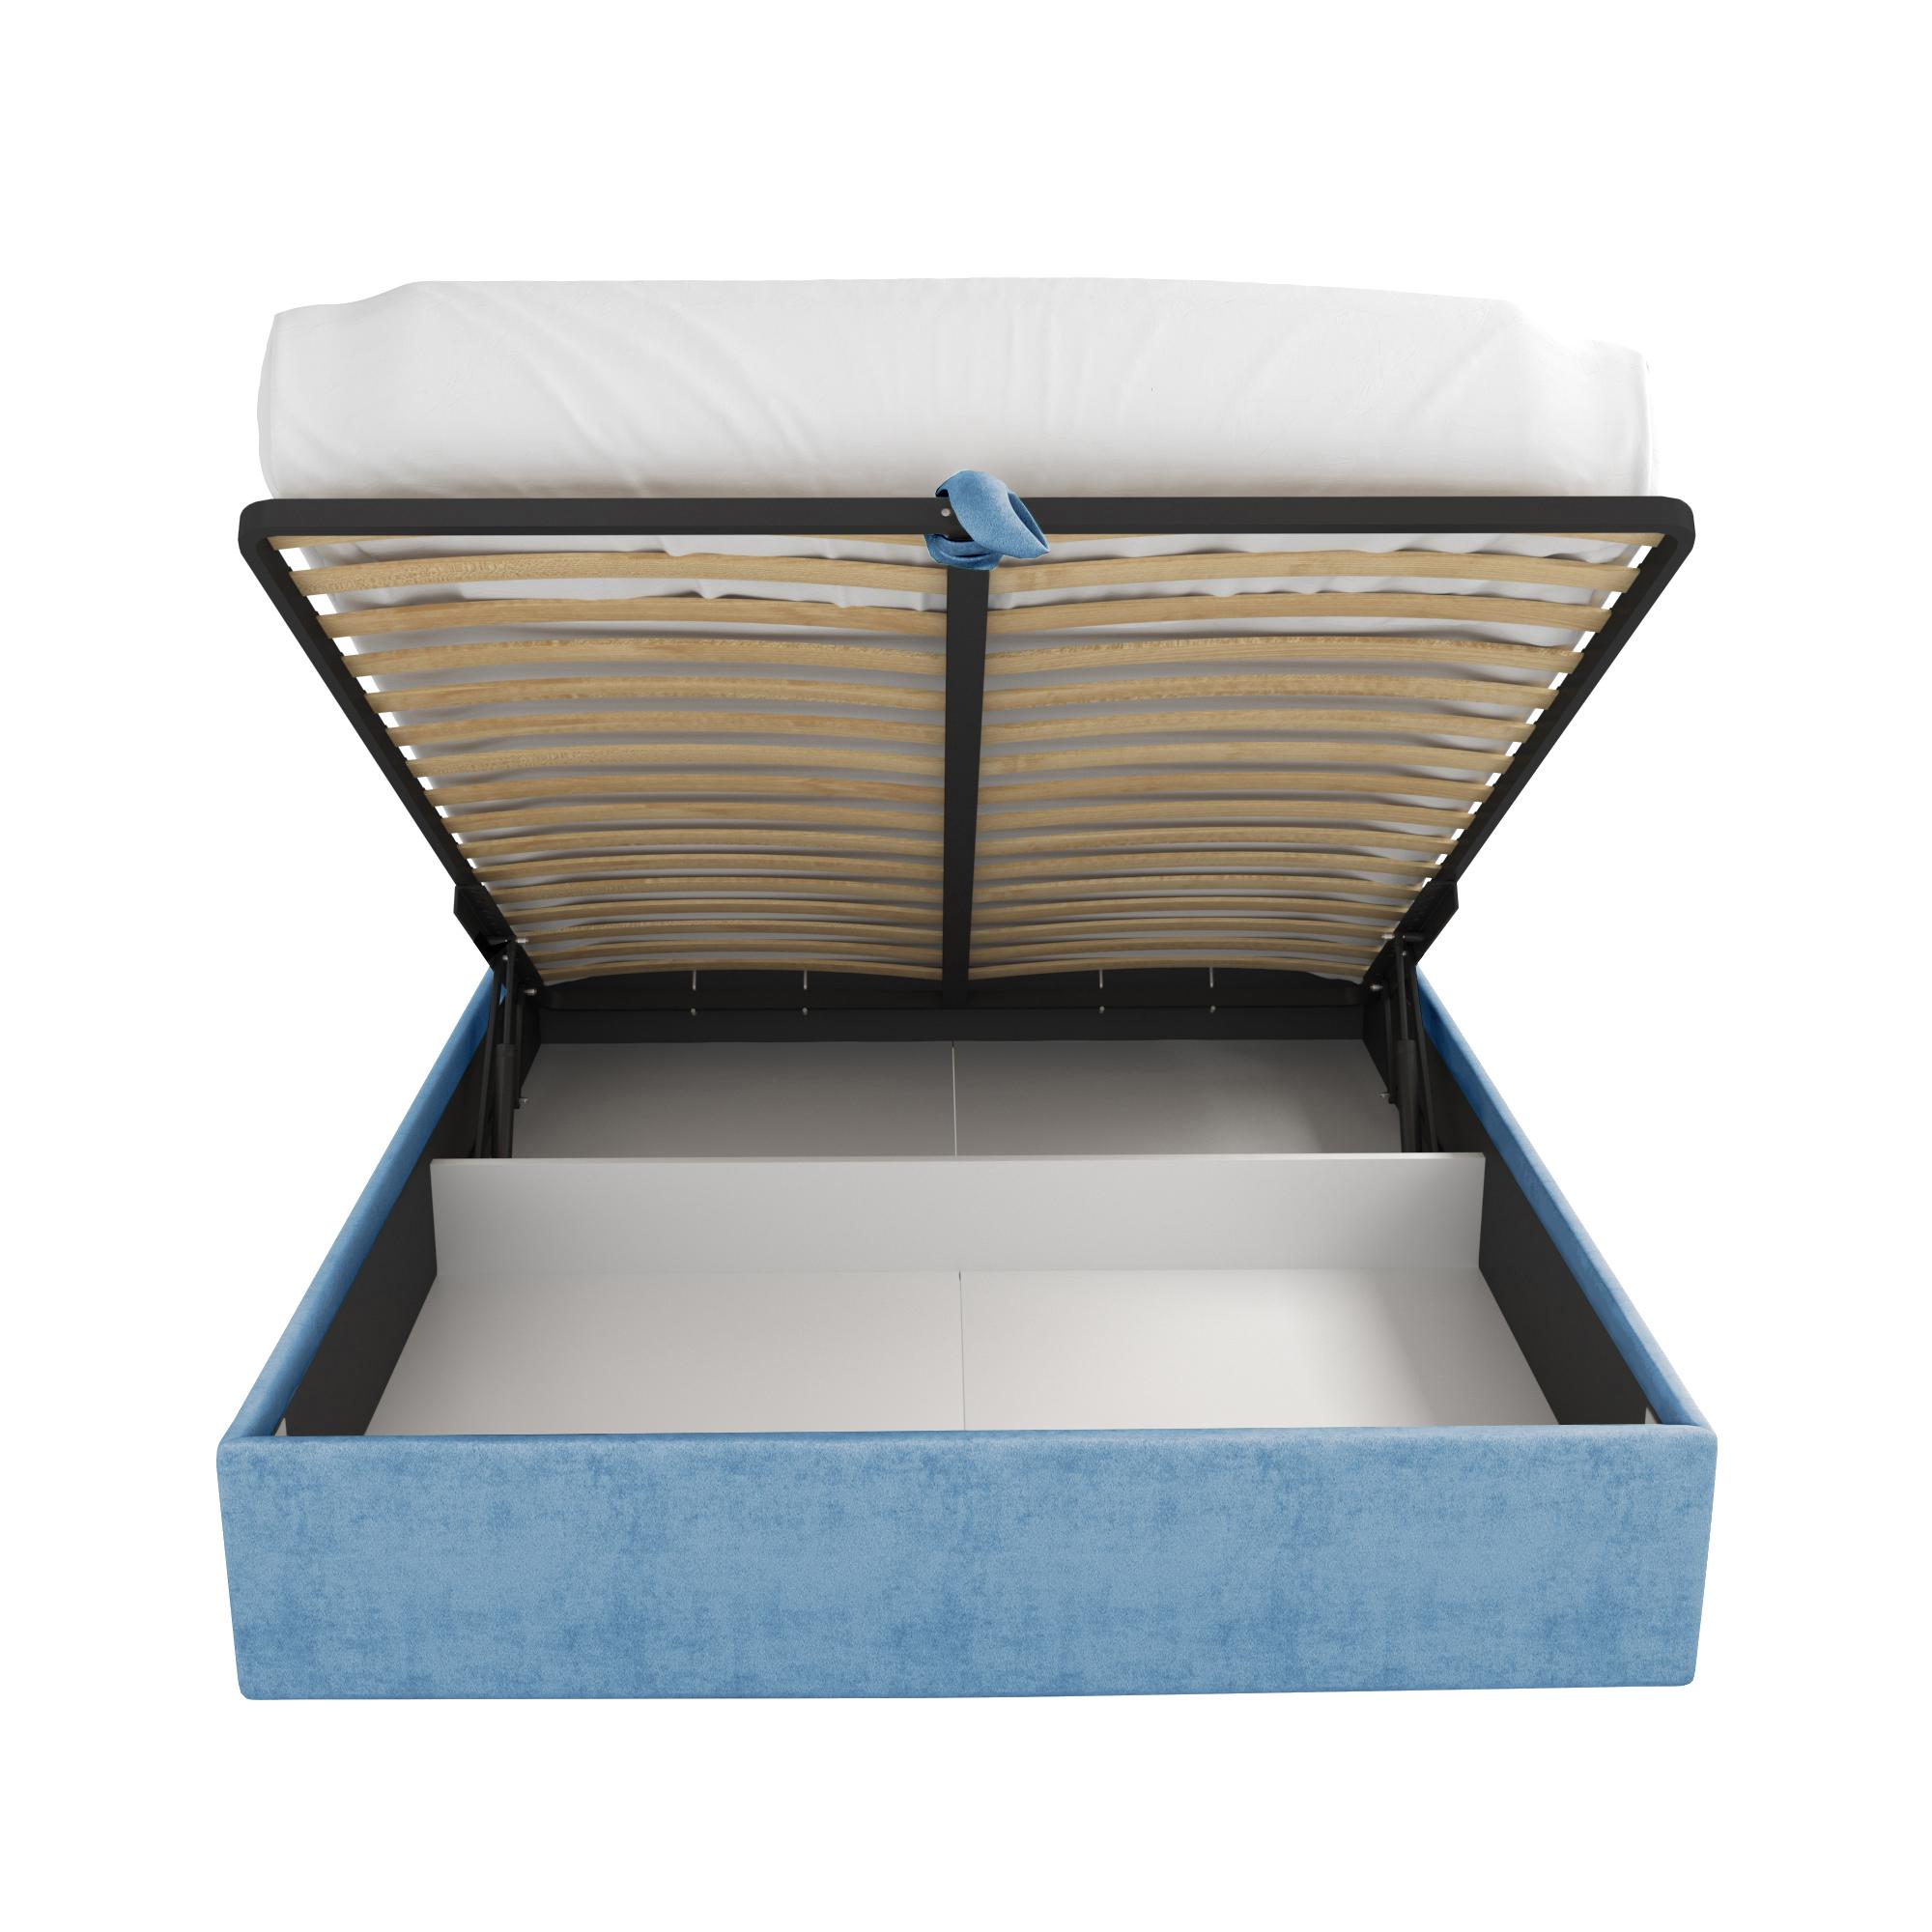 Кровать Ламия синяя 160х200 изображение товара